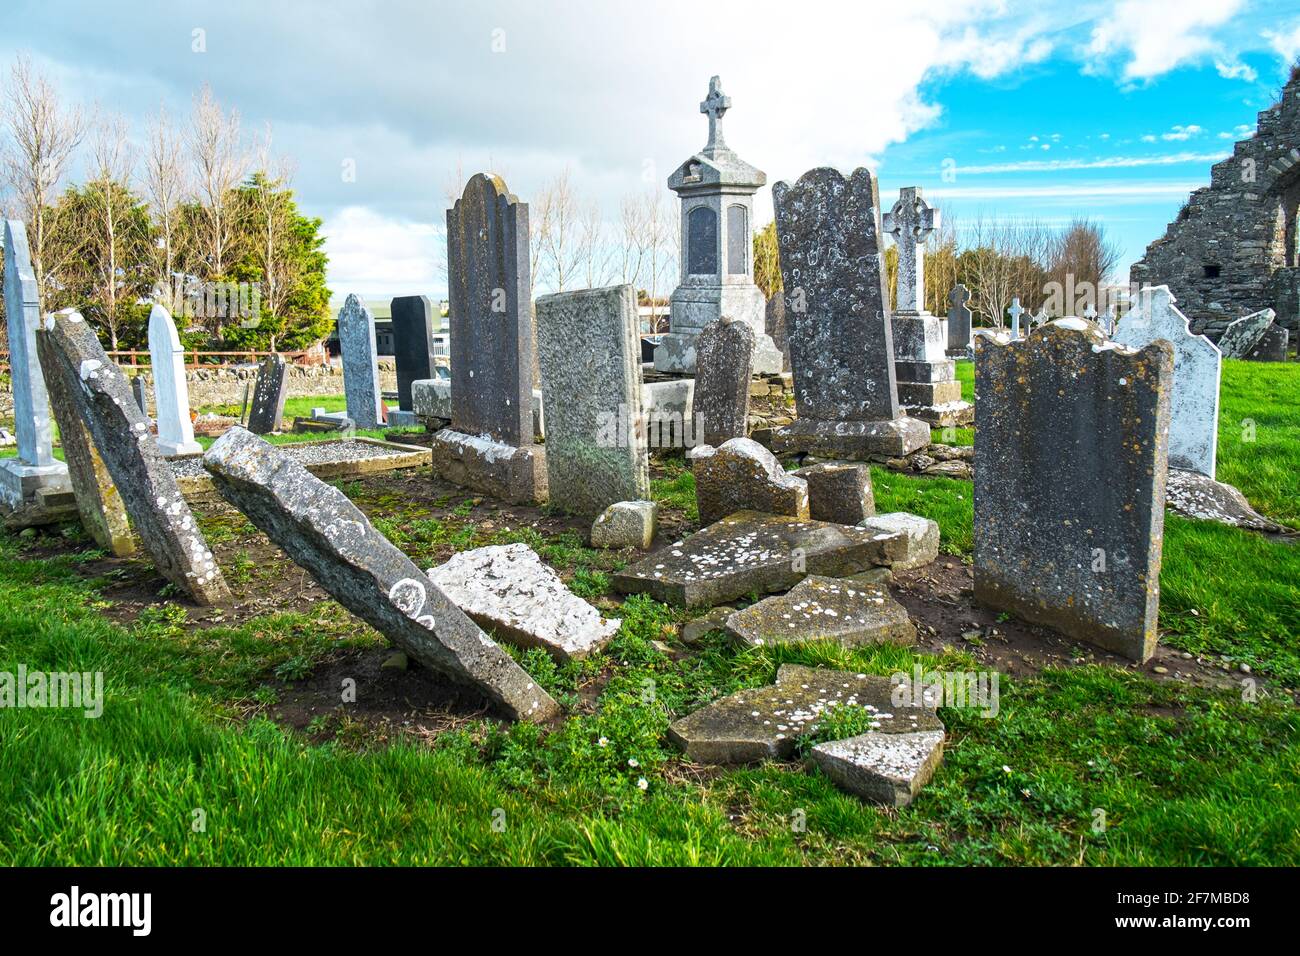 Grabsteine in einem vernachlässigten alten Teil eines irischen Friedhofs Stockfoto